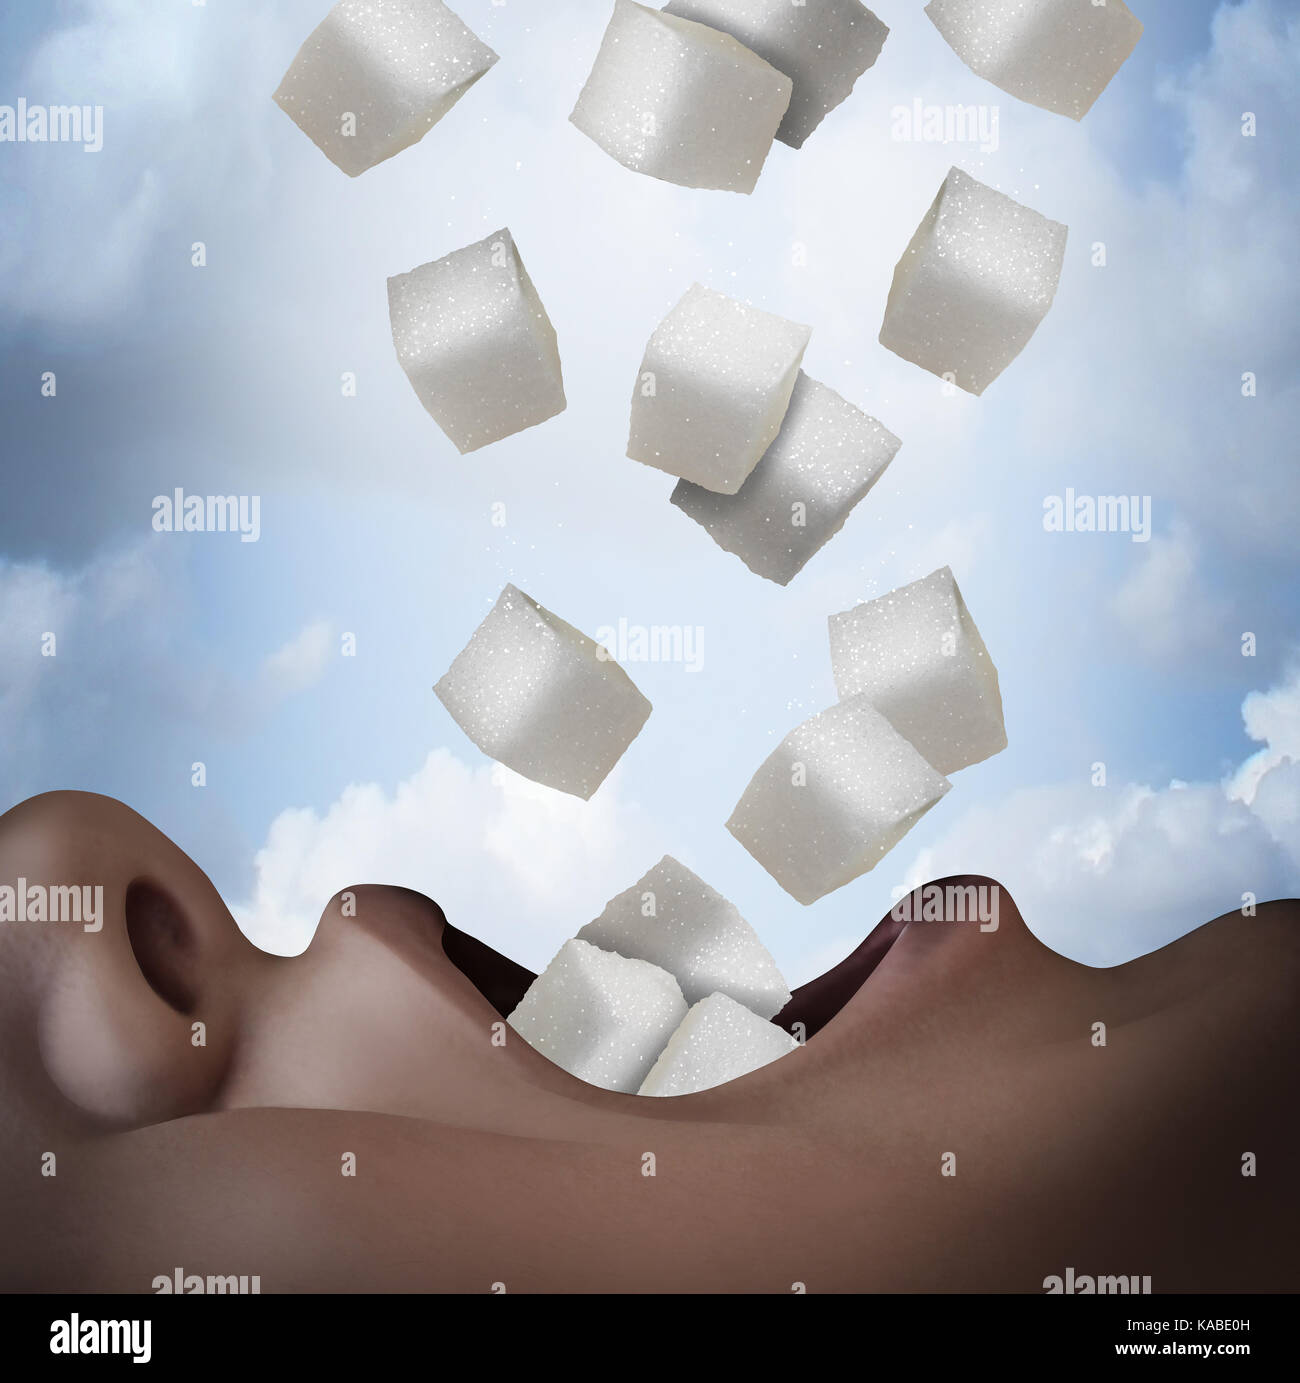 Mangiare zucchero concetto come una malsana ingrediente alimentare come una persona consuma raffinato bianco cubo granulata snack come un rischio per la salute simbolo. Foto Stock